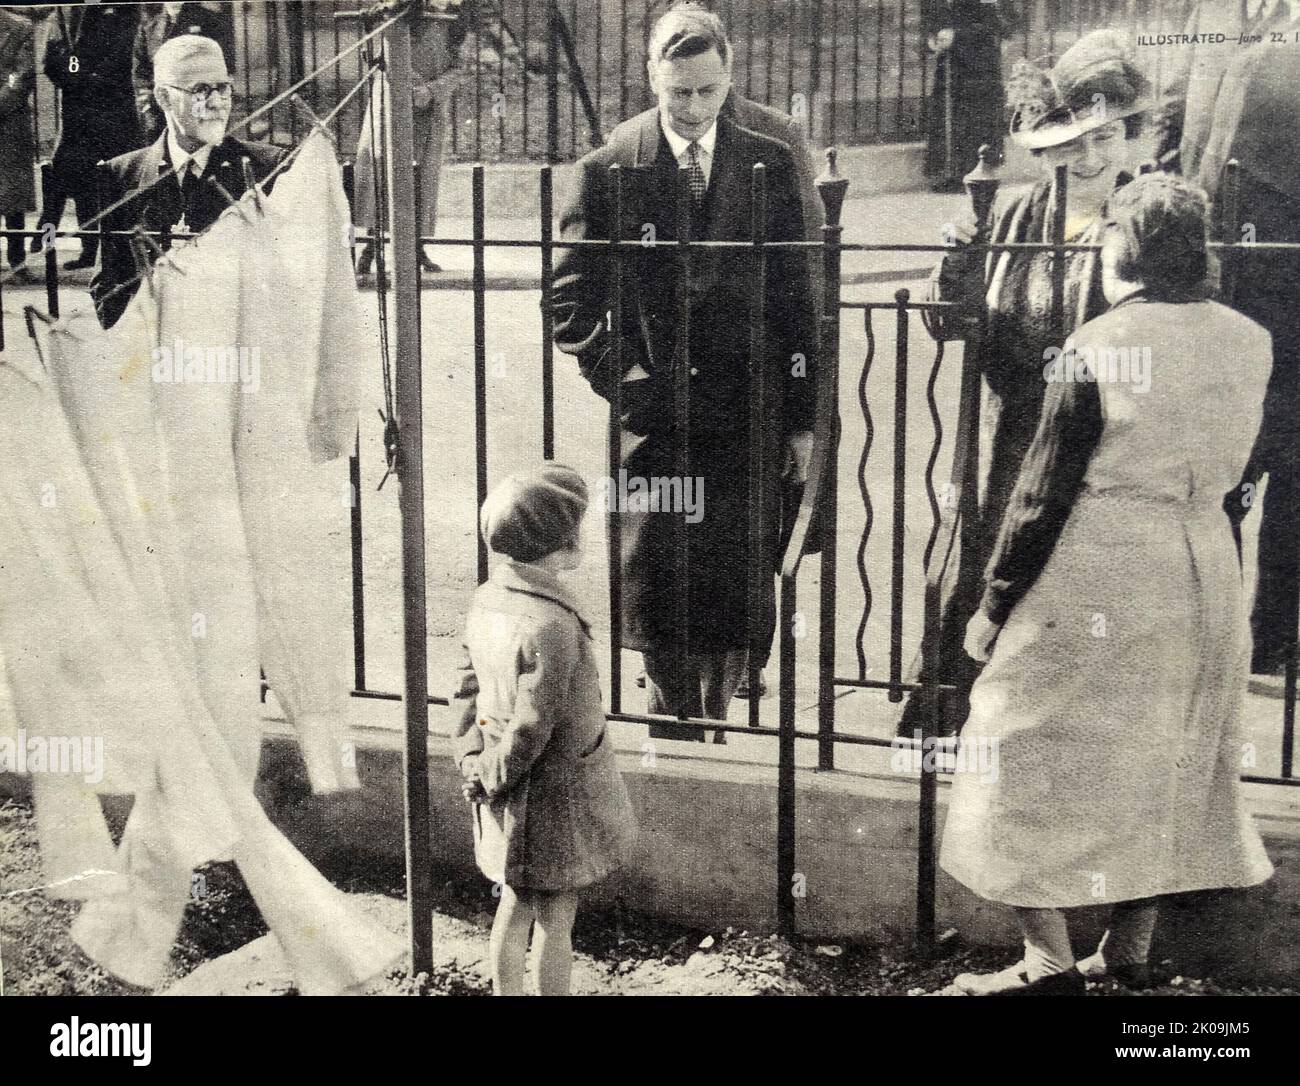 Visite en temps de guerre du roi George VI et de la reine Elizabeth dans un immeuble de Londres, 1940. George VI (Albert Frederick Arthur George; 14 décembre 1895 - 6 février 1952) fut roi du Royaume-Uni et des dominions du Commonwealth britannique du 11 décembre 1936 jusqu'à sa mort en 1952. Elizabeth Angela Marguerite Bowes-Lyon (4 août 1900 - 30 mars 2002) a été reine du Royaume-Uni et des dominions du 11 décembre 1936 au 6 février 1952 en tant qu'épouse du roi George VI Après la mort de son mari, elle était connue sous le nom de reine Elizabeth, la reine mère, pour éviter toute confusion avec sa fille, la reine Banque D'Images